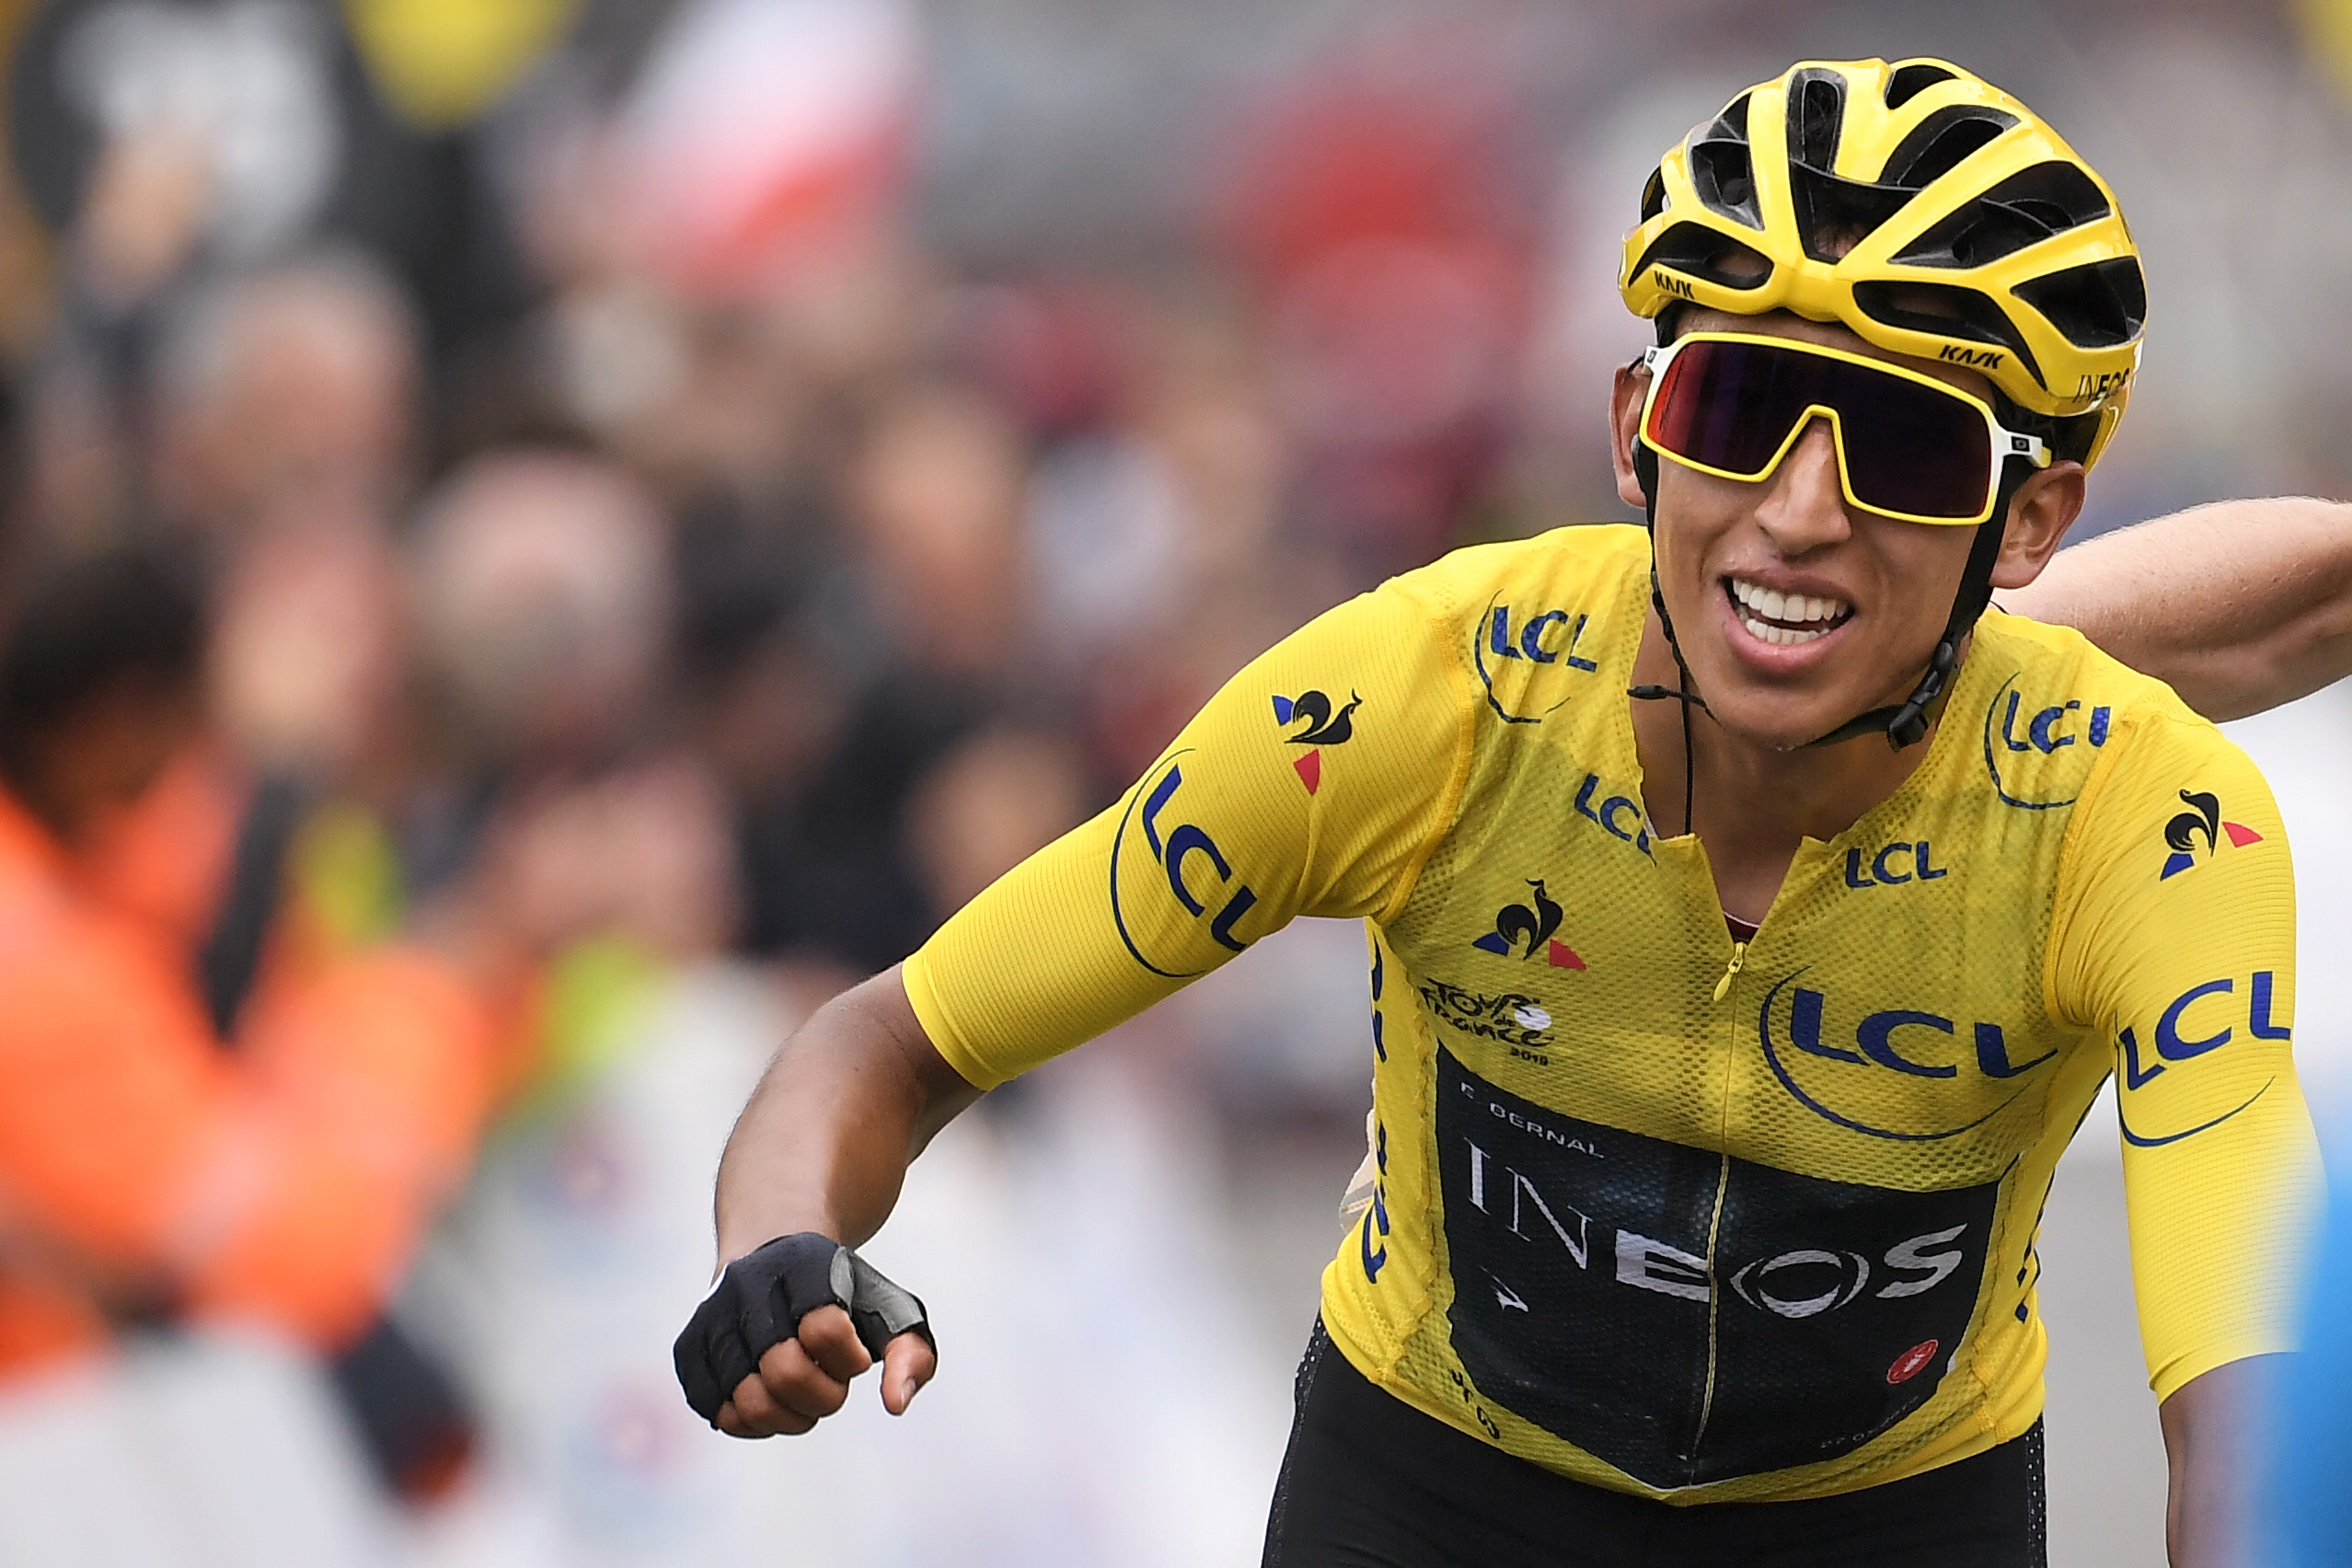 Egan Bernal se encuentra cerca de ganar el Tour de Francia. (Foto Prensa Libre: AFP)